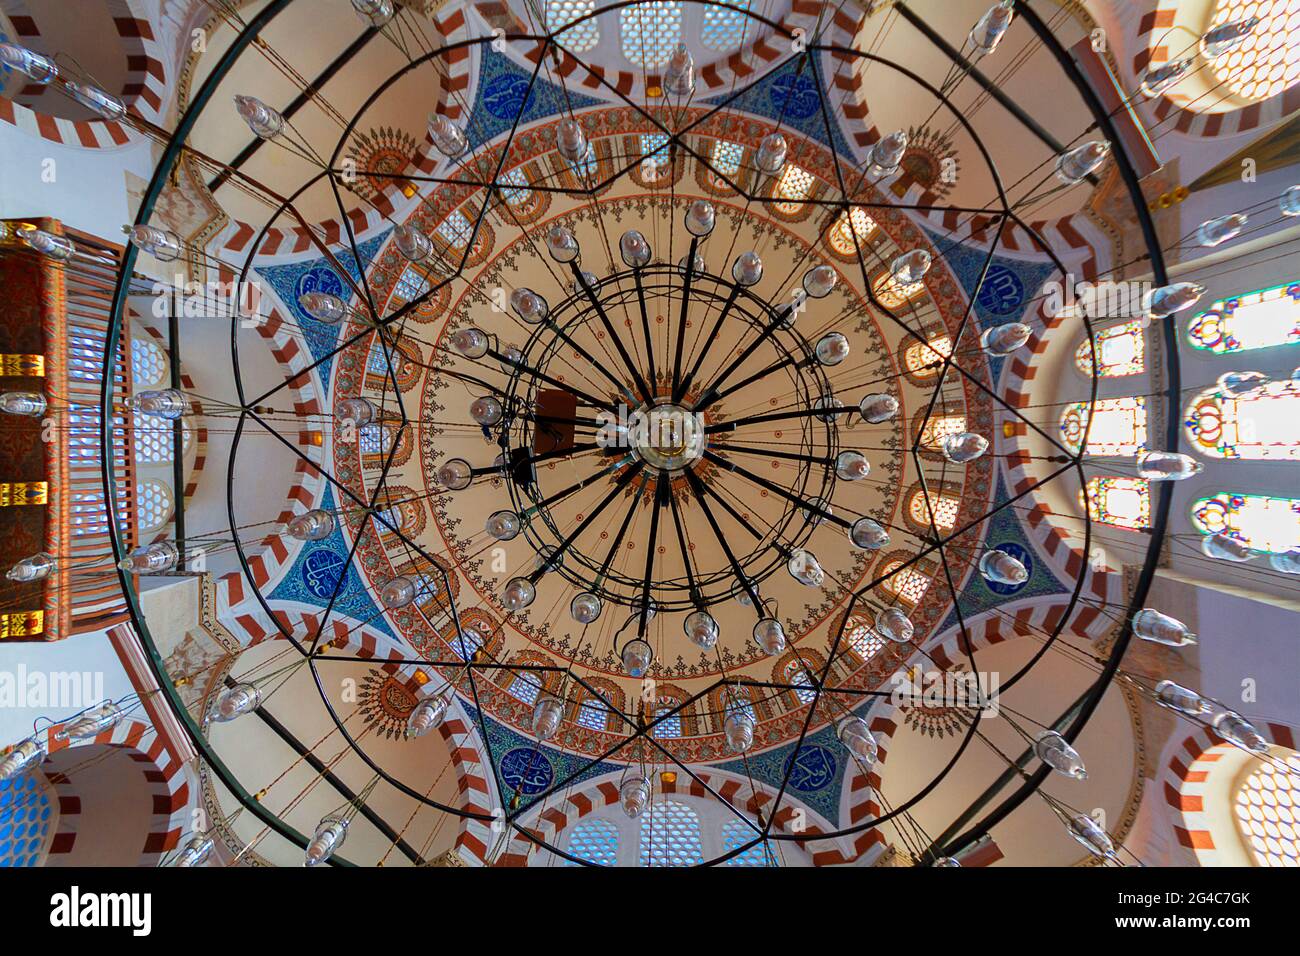 Dôme de la mosquée Rustem Pasha construite au XVIe siècle, Istanbul, Turquie Banque D'Images